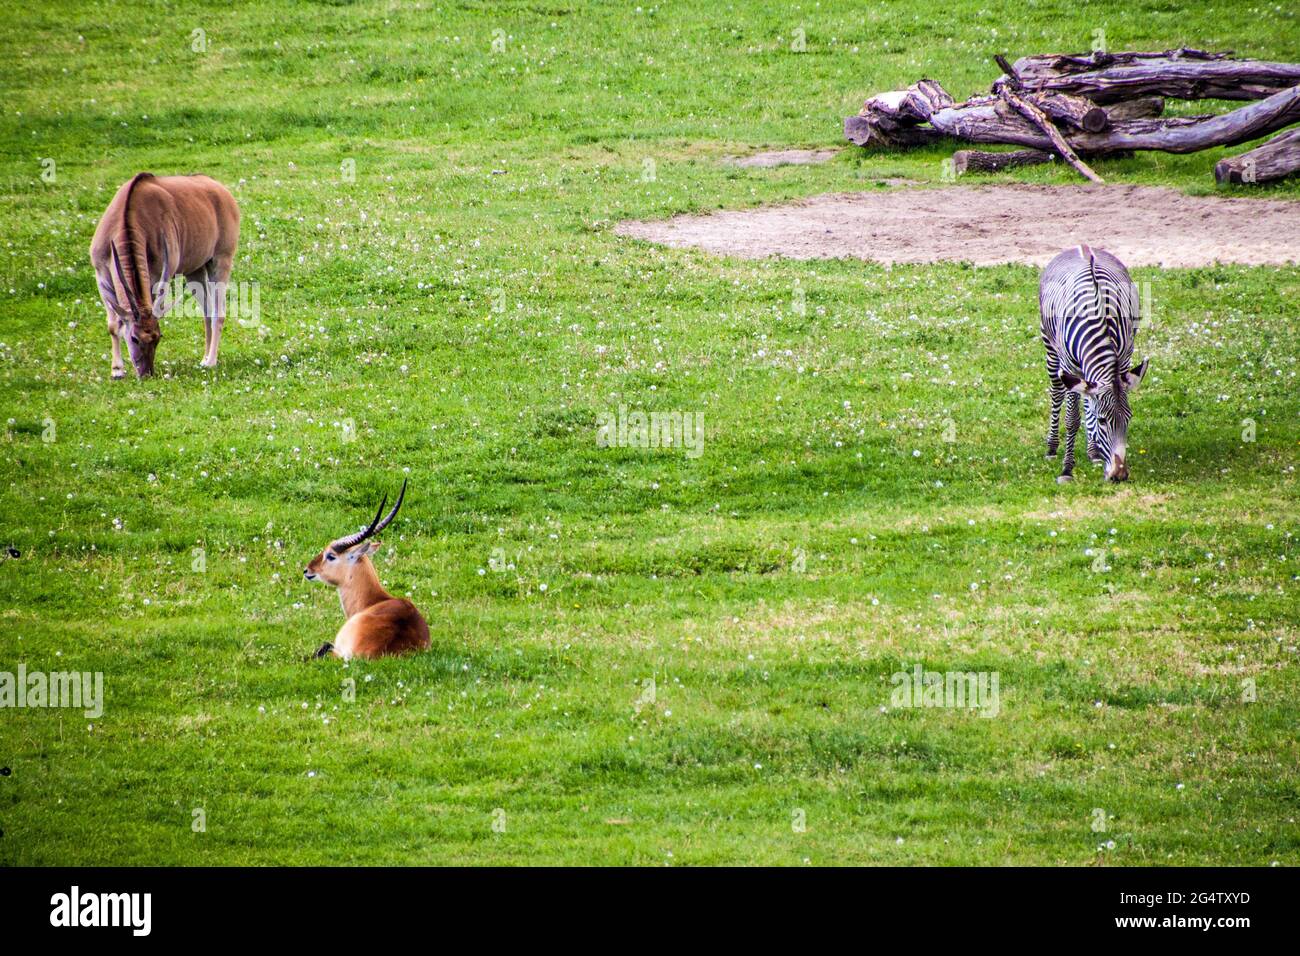 Antilope de sable (Hippotragus Niger) et zèbre de Grevy (Equus Grevy) au zoo de Prague Banque D'Images